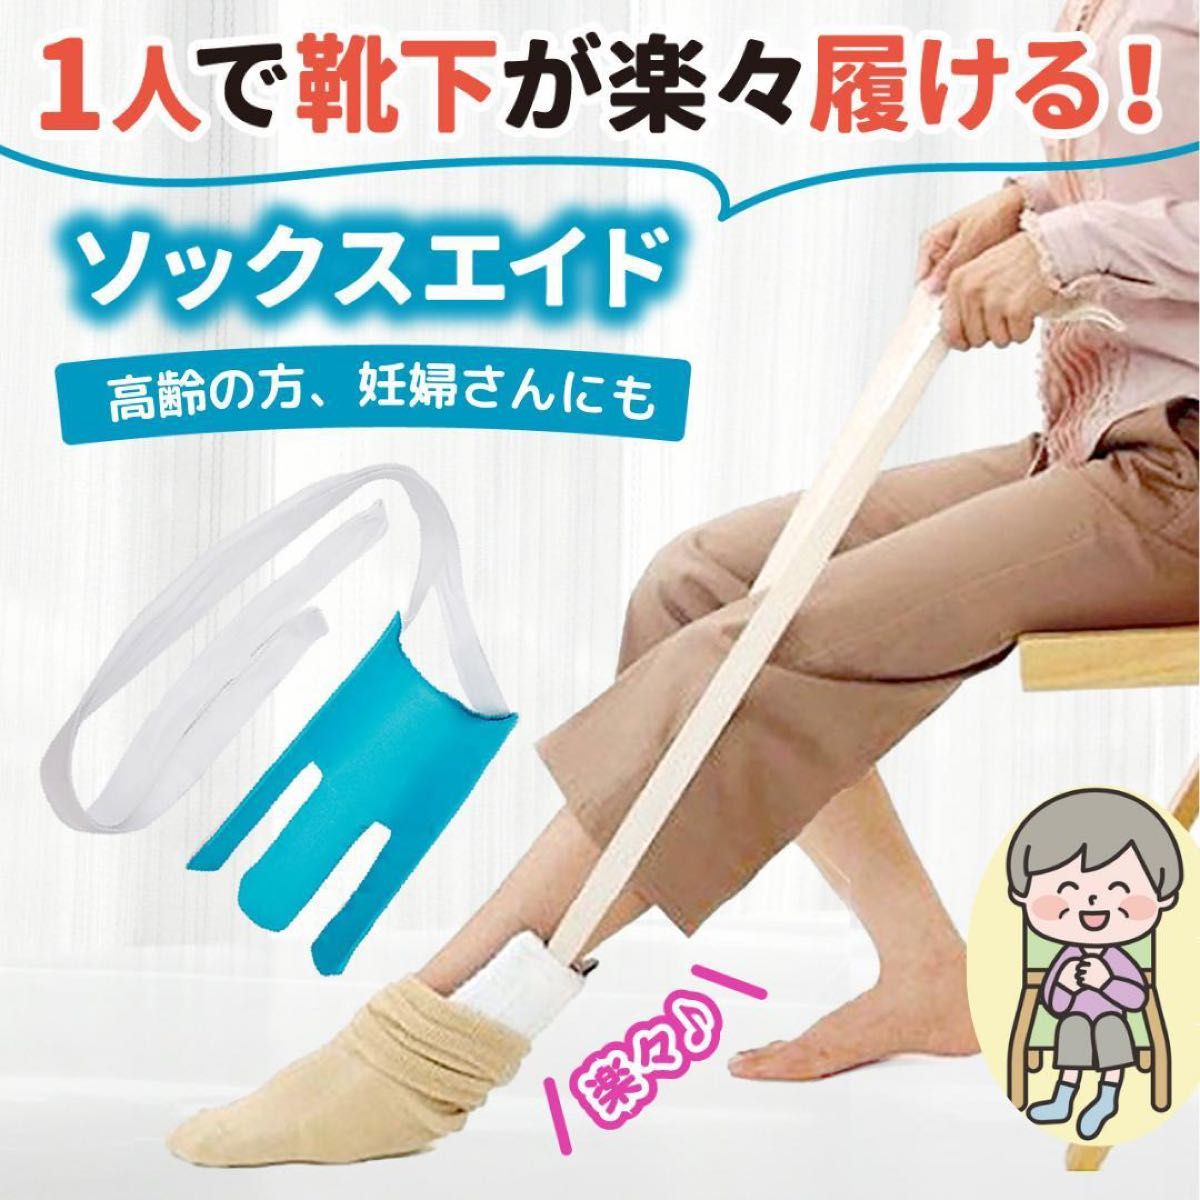 ソックスエイド 靴下エイド 靴下スライダー 介護 妊婦 術後 椅子に座ったまま 靴下をはく補助器具 関節痛 一人で靴下がはけます